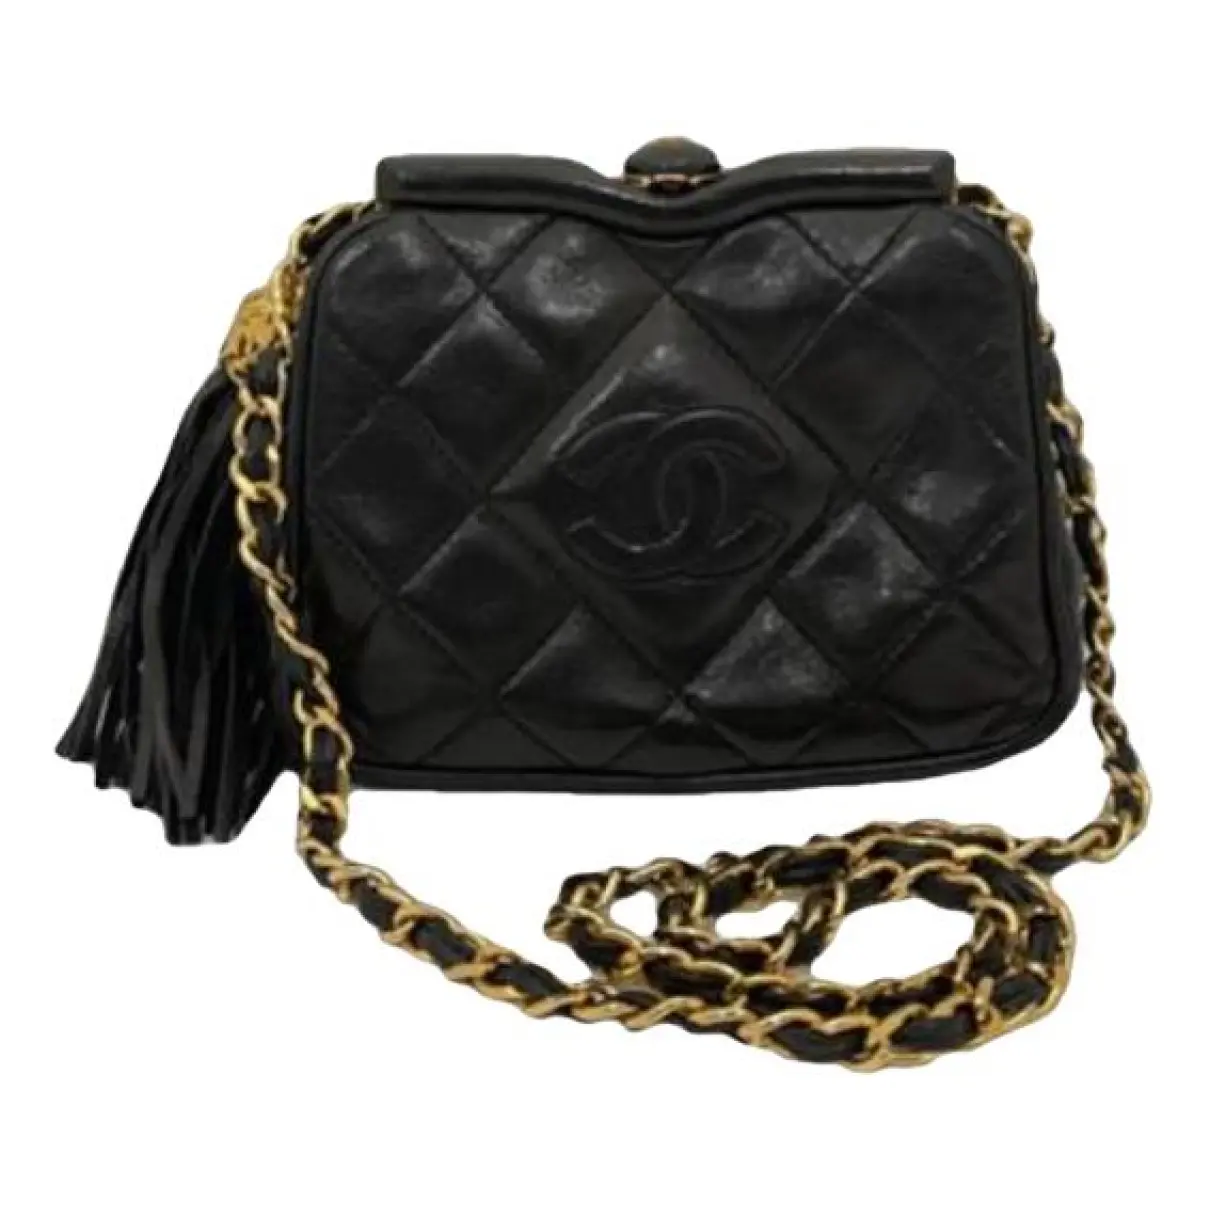 Leather clutch bag Chanel - Vintage